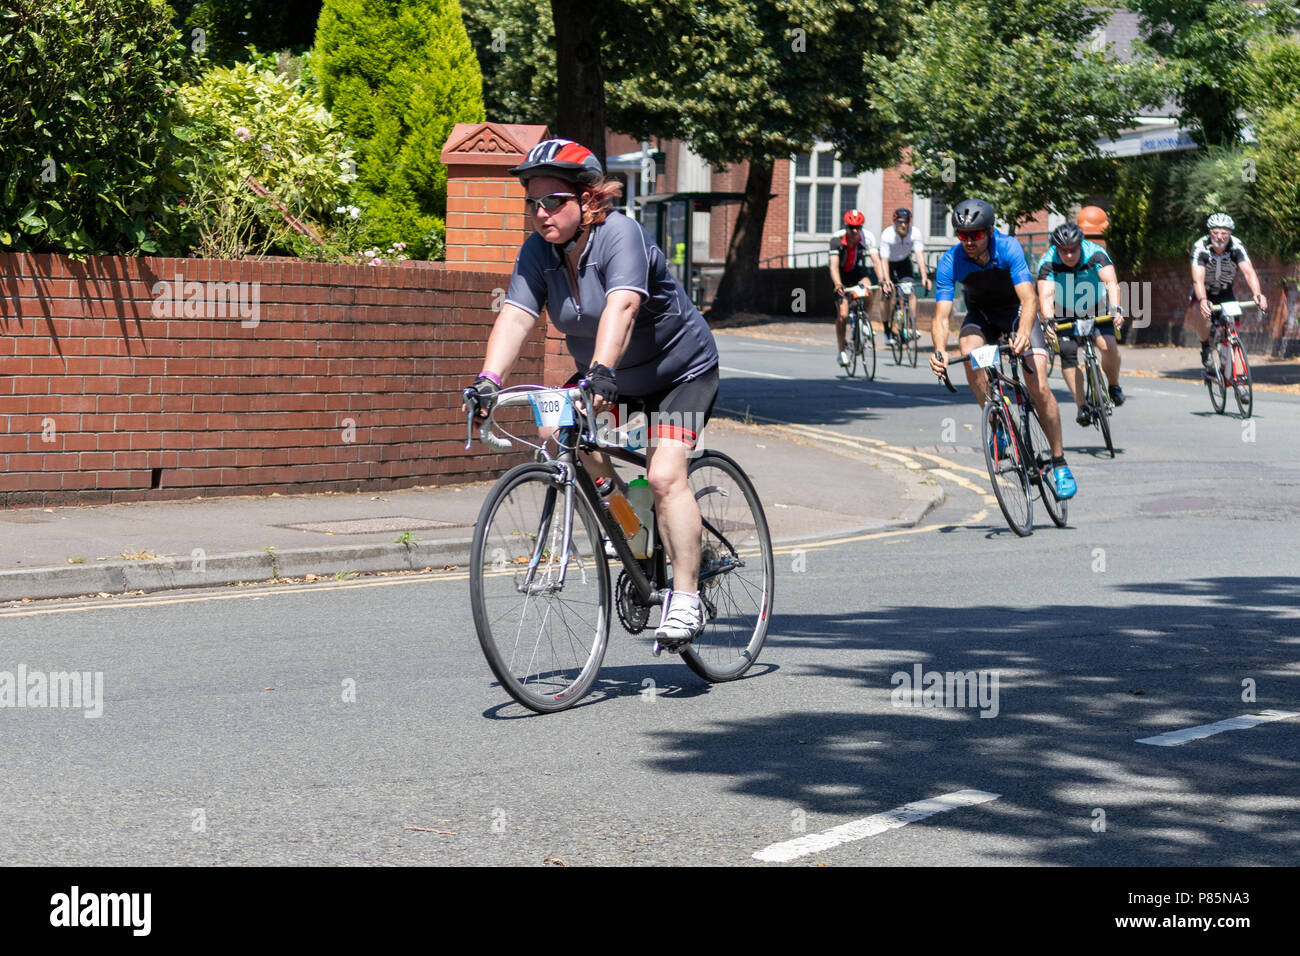 CARDIFF, WALES/UK - 8 juillet : Les cyclistes participant à l'événement cycliste Velothon à Cardiff au Pays de Galles, le 8 juillet 2018. Des personnes non identifiées Banque D'Images